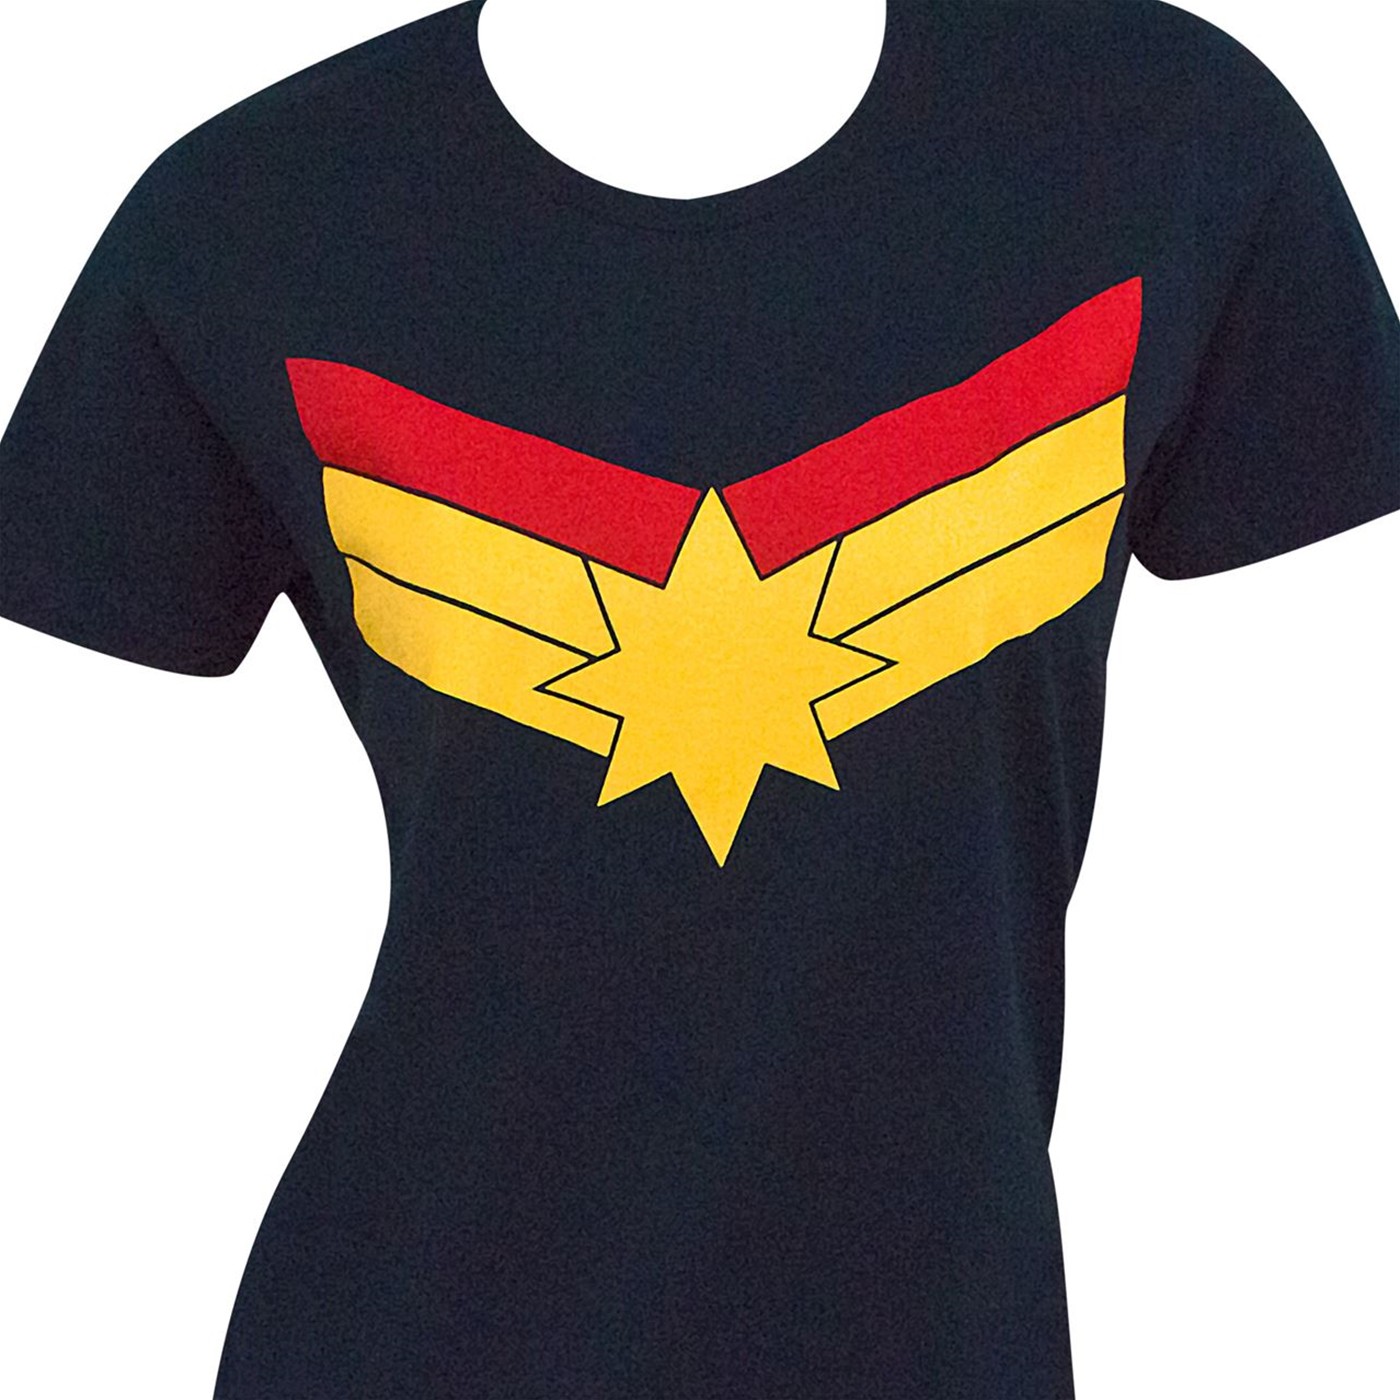 Captain Marvel Symbol Women's Standard T-Shirt